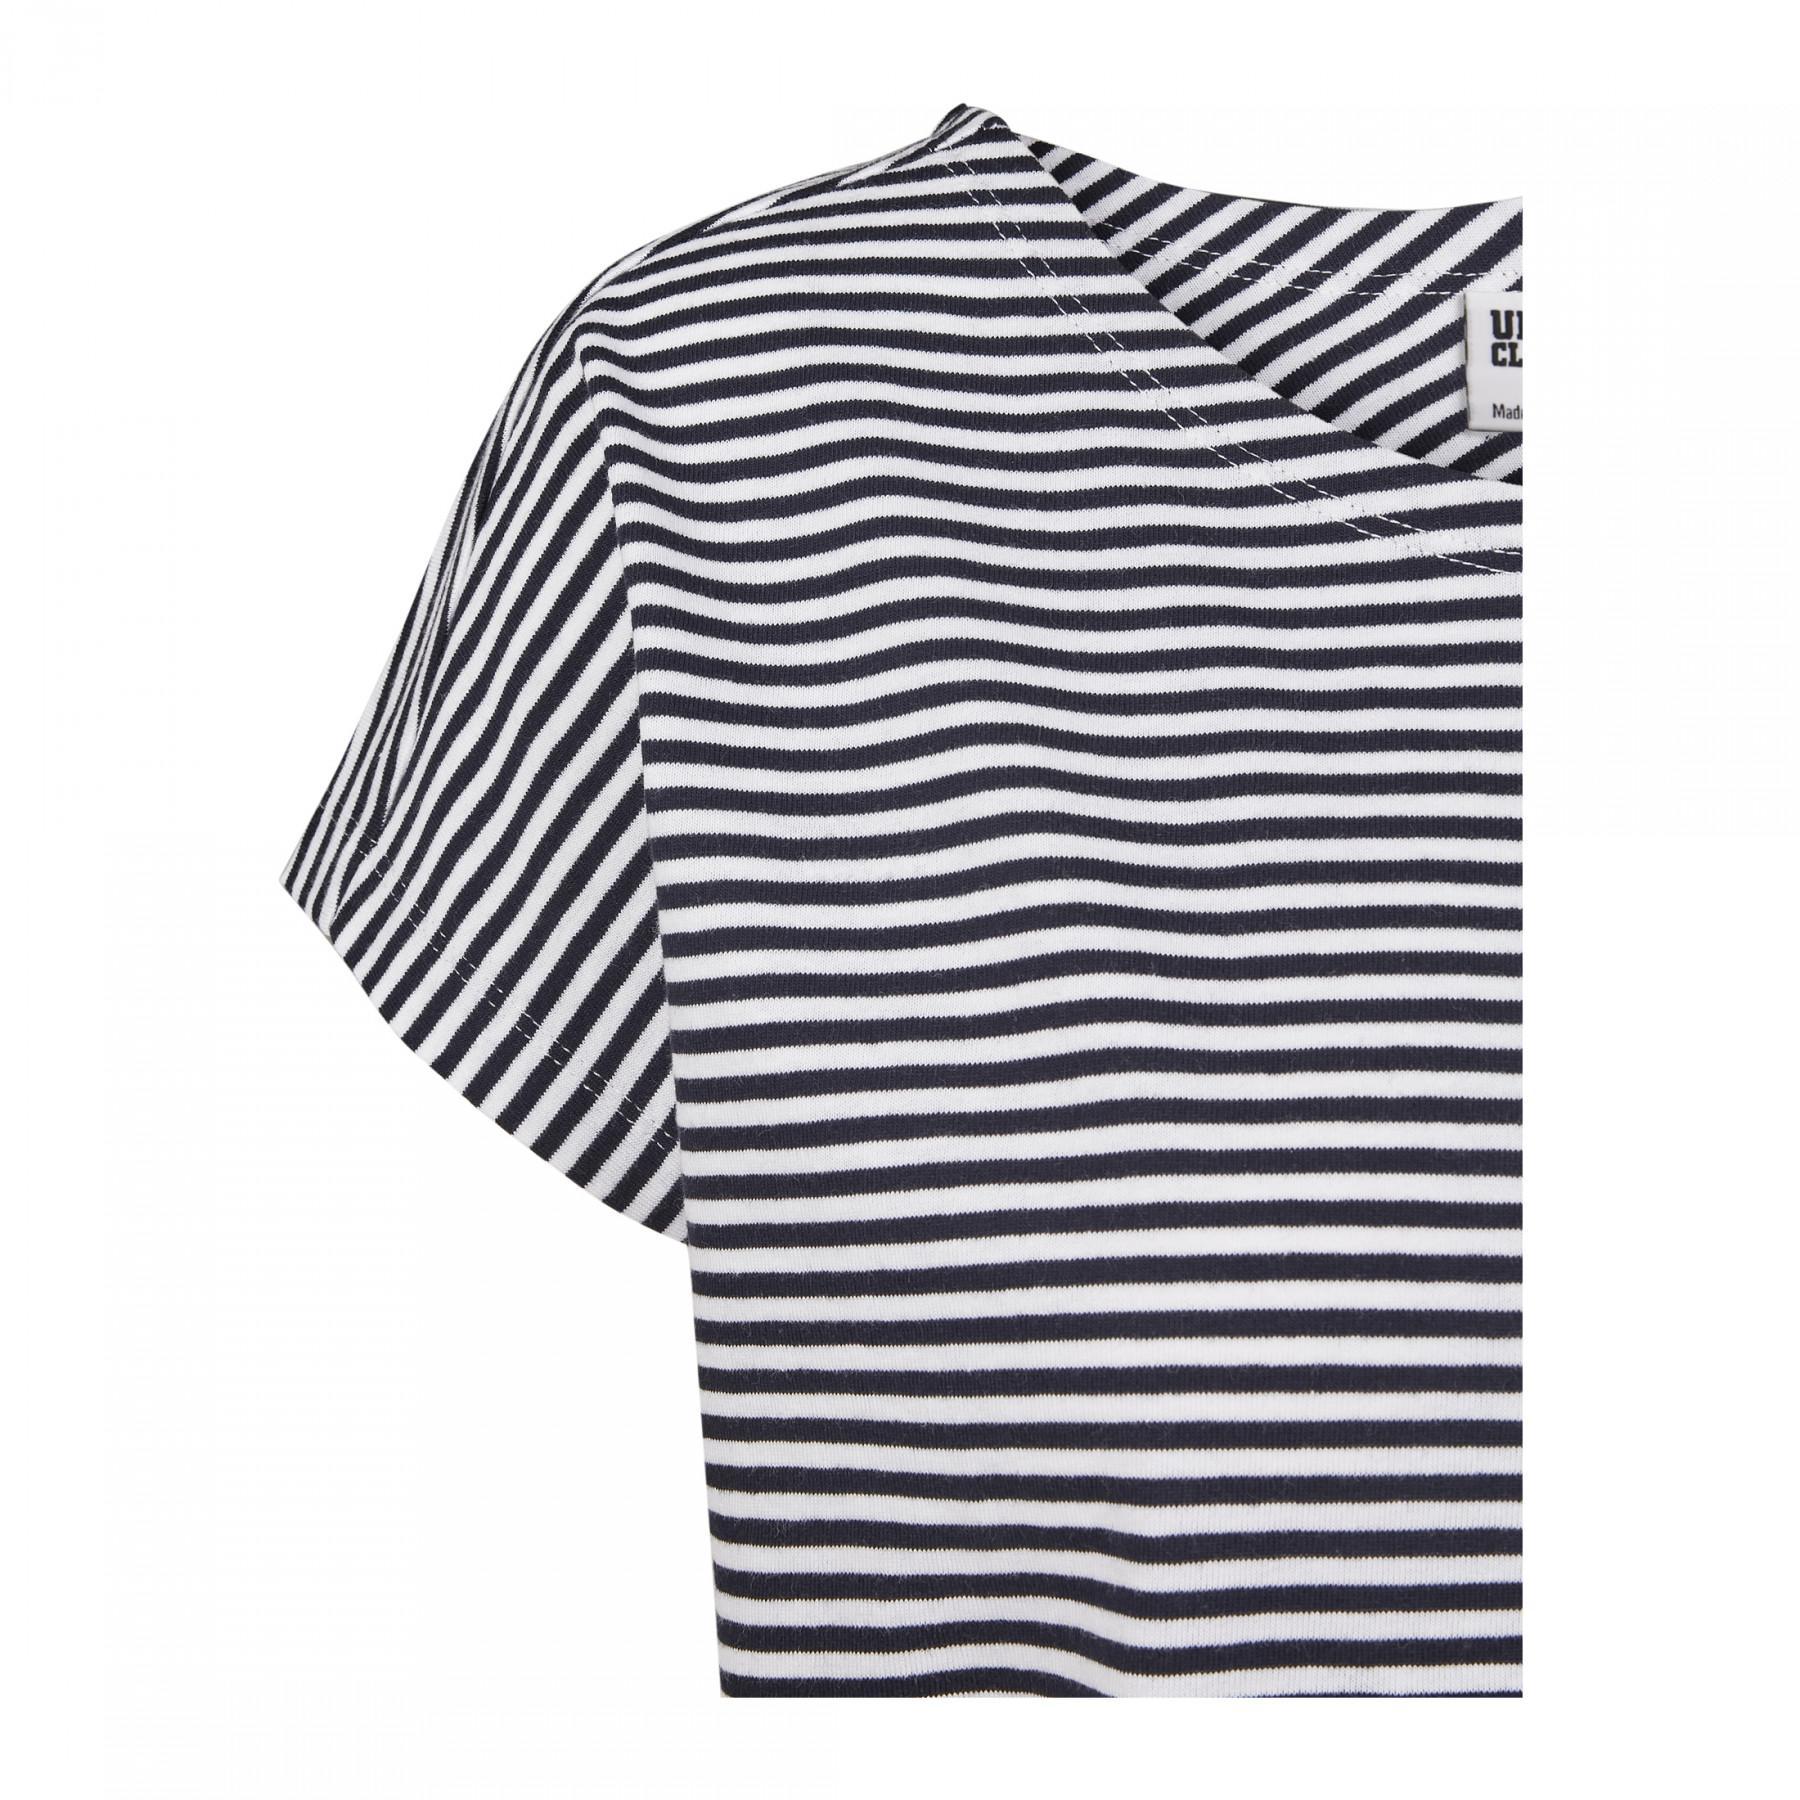 T-shirt donna taglie grandi Urban Classic yarn Stripe